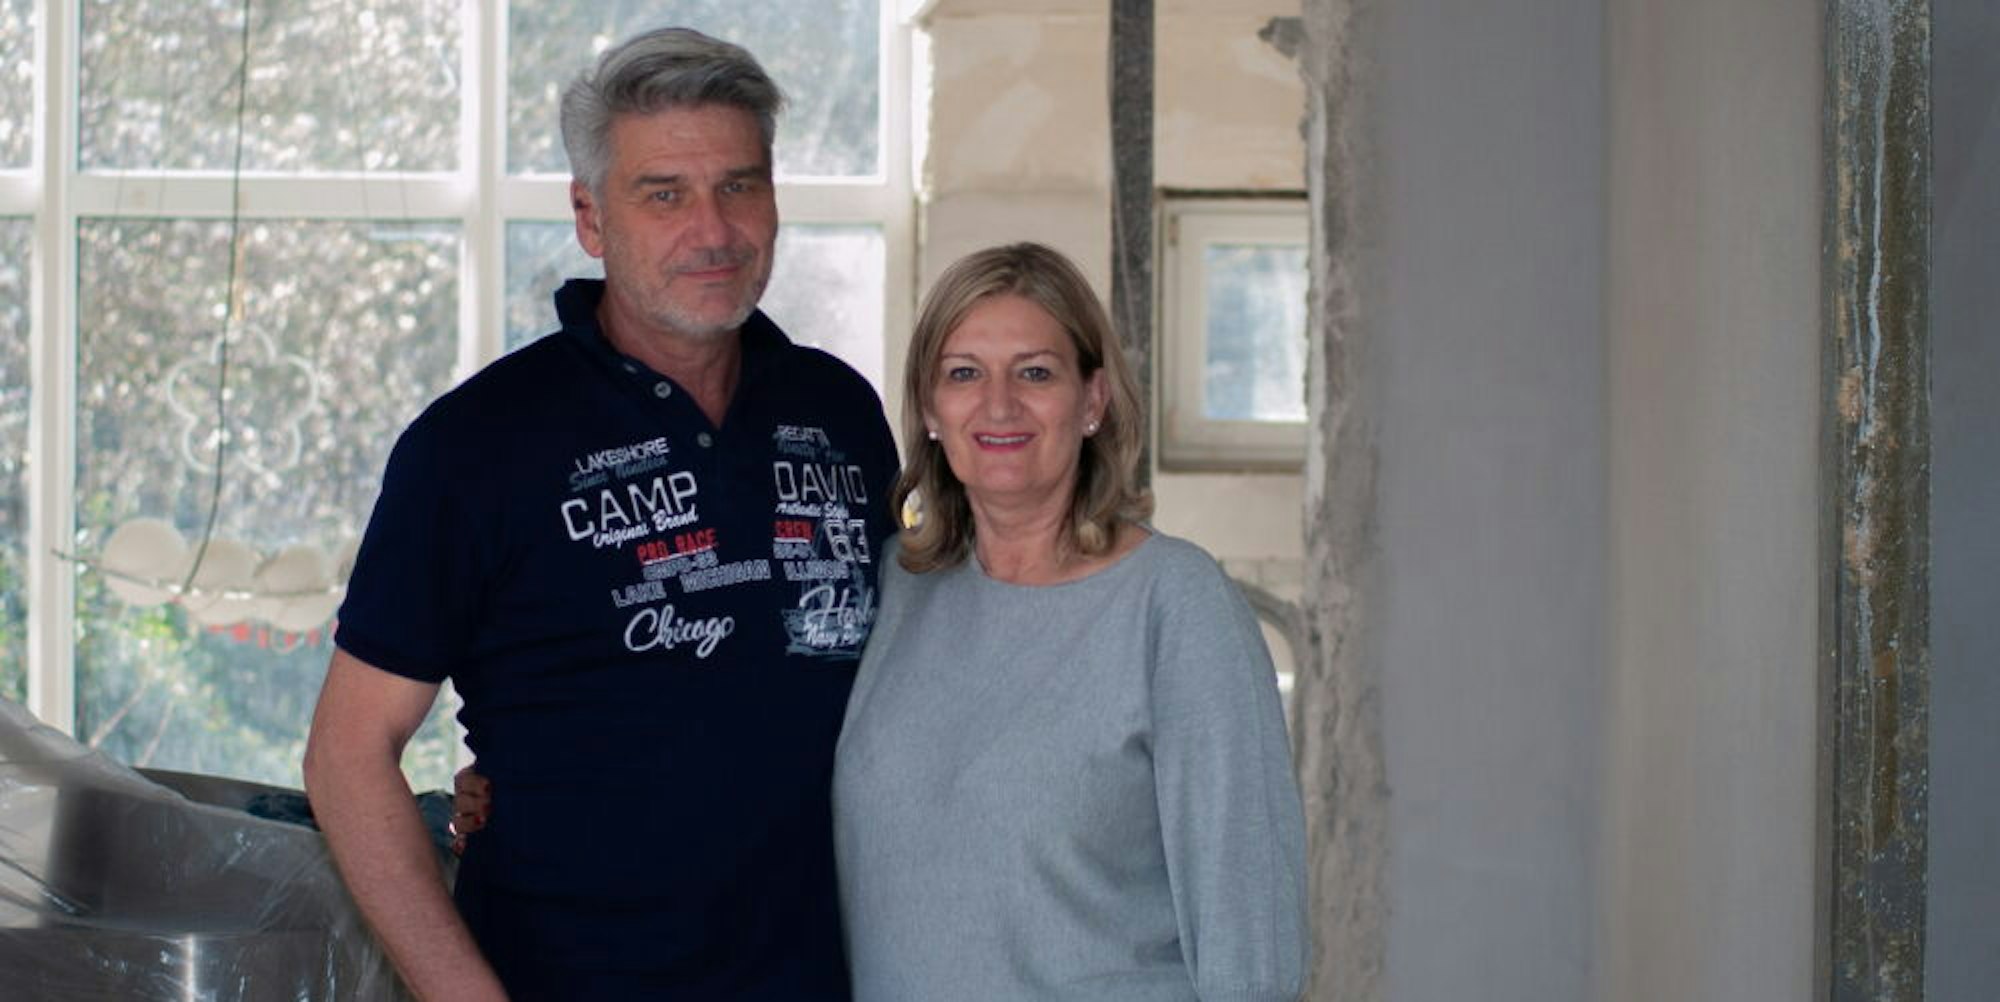 In ihrem Haus in Roitzheim können Gabriele und Udo Jansen seit der Flut nicht mehr wohnen.